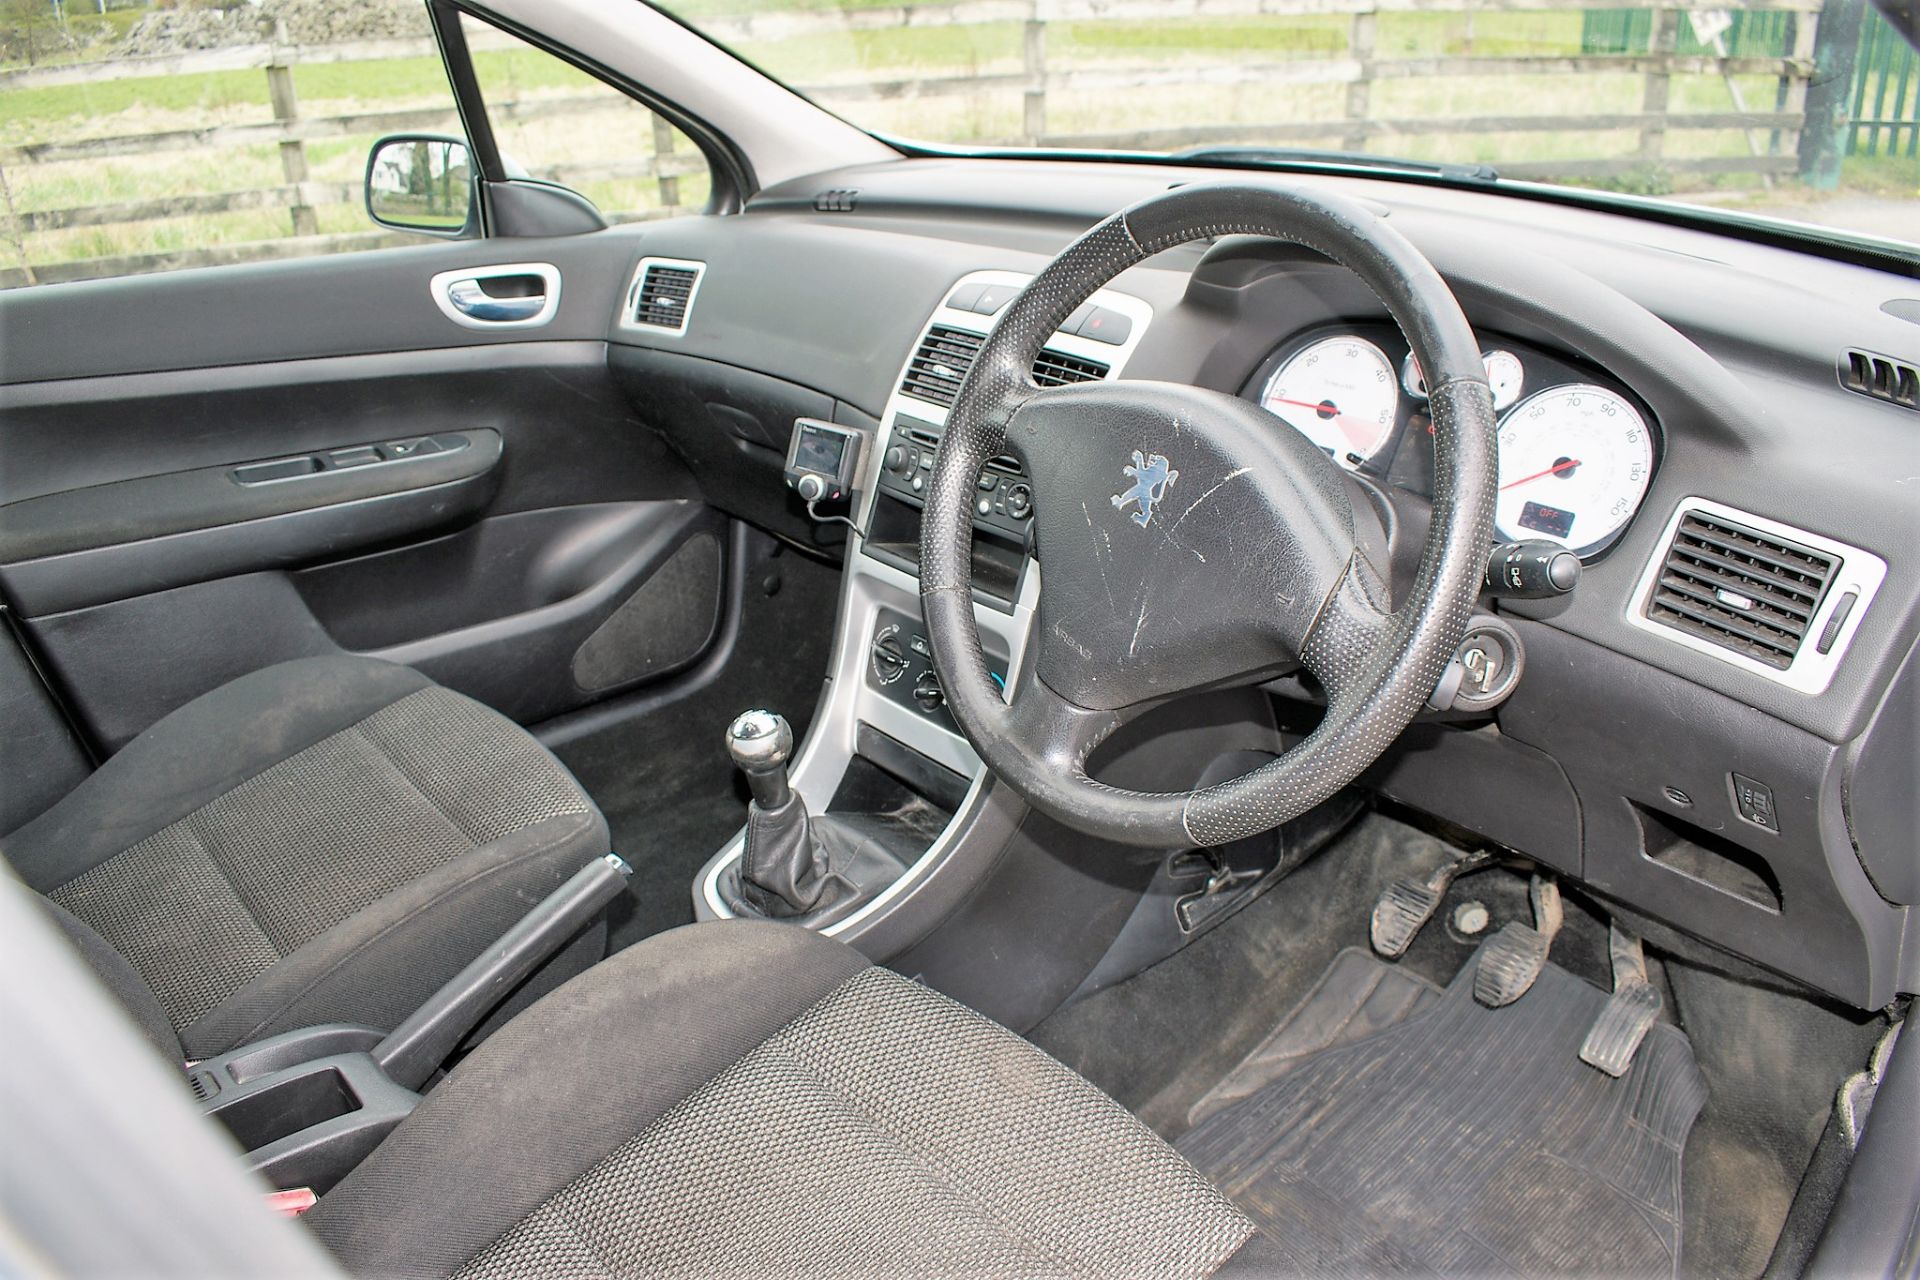 Peugeot 307 HDi 5 door hatchback car Registration Number: WF56 XUJ Date of Registration: 26/10/ - Image 7 of 12